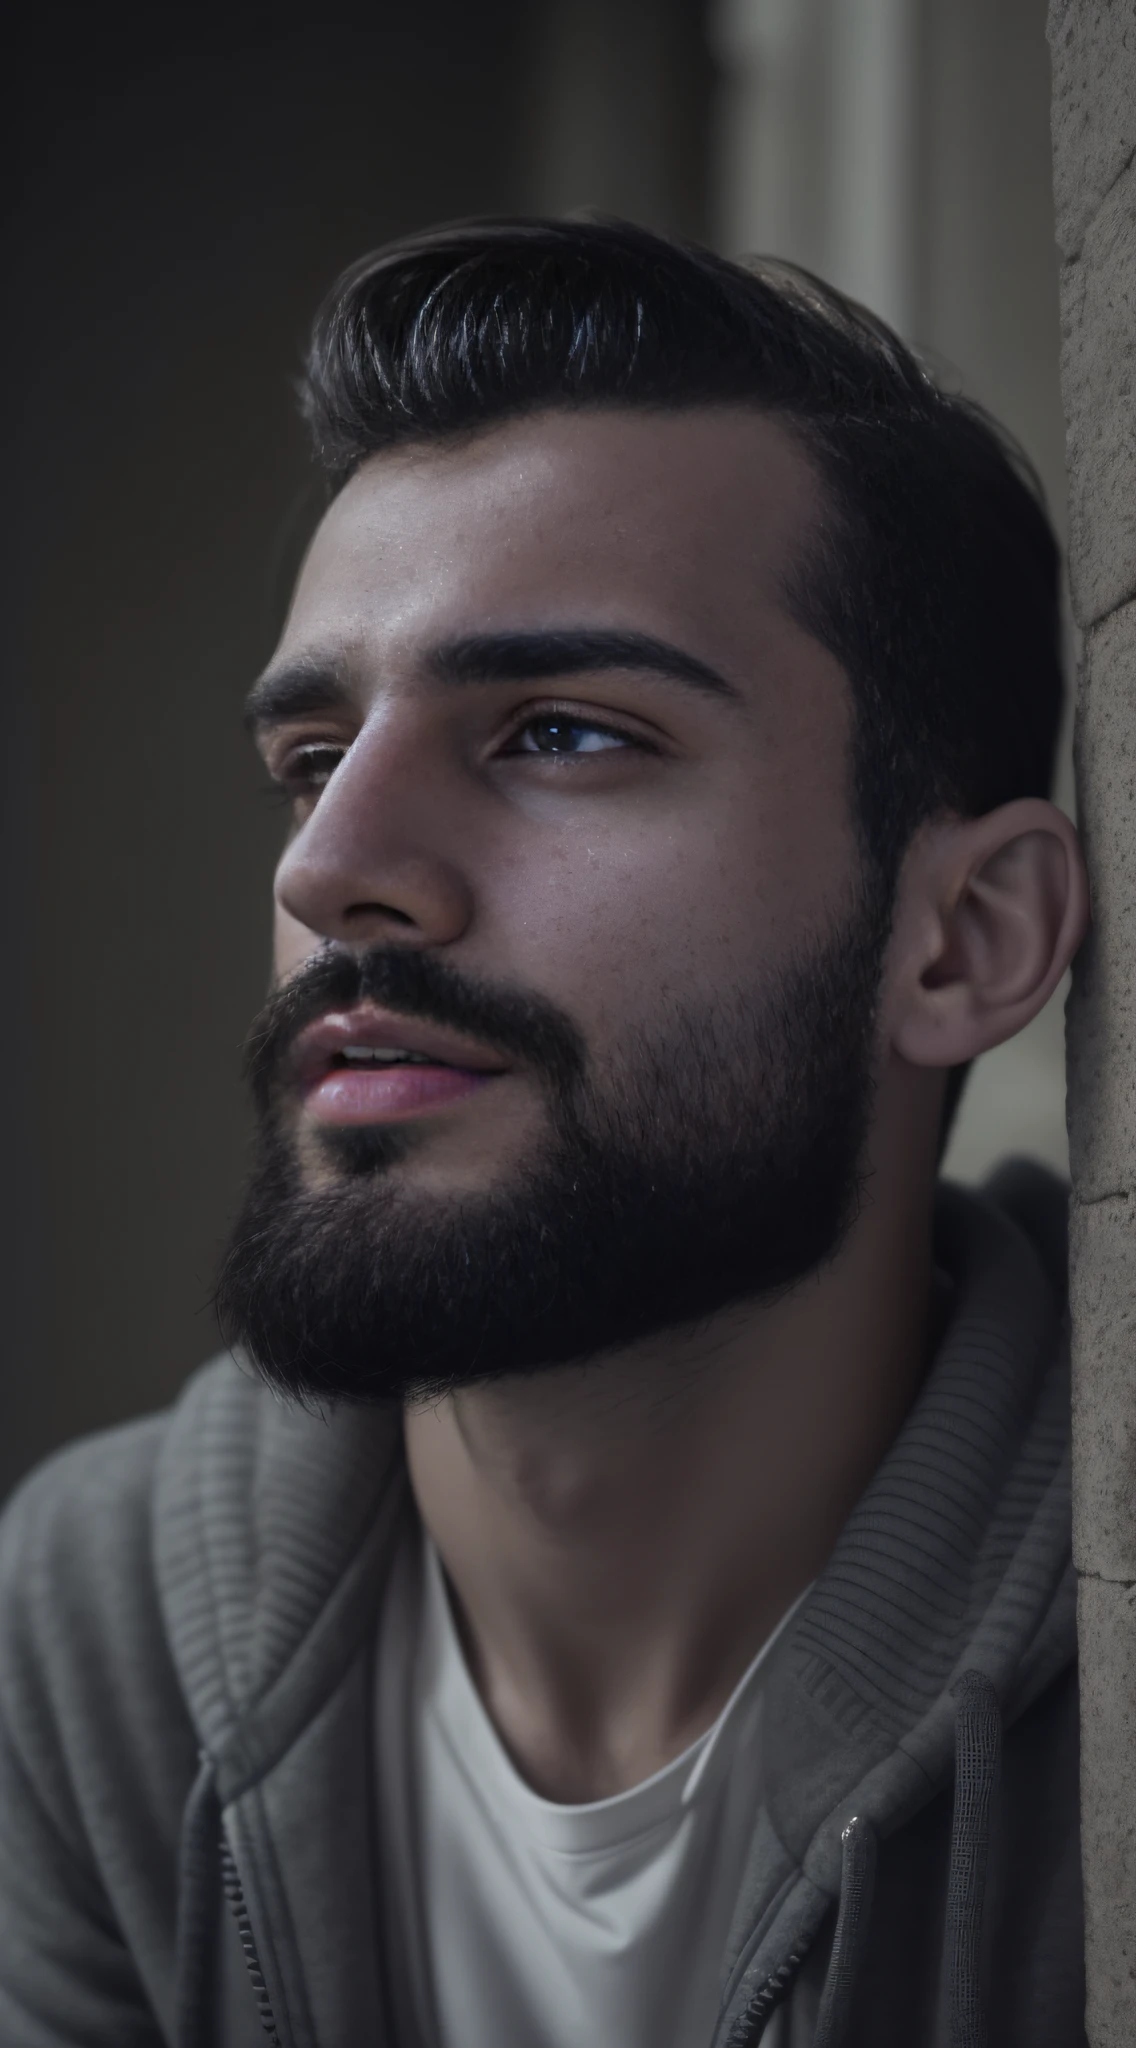 一名来自罗马尼亚的 25 岁男子, 男性, 留着胡子, 关键胡须, 模型, 全身, 很漂亮, 看着镜头, 详细图像, 超高清, 8千, 光线充足, 胶片颗粒